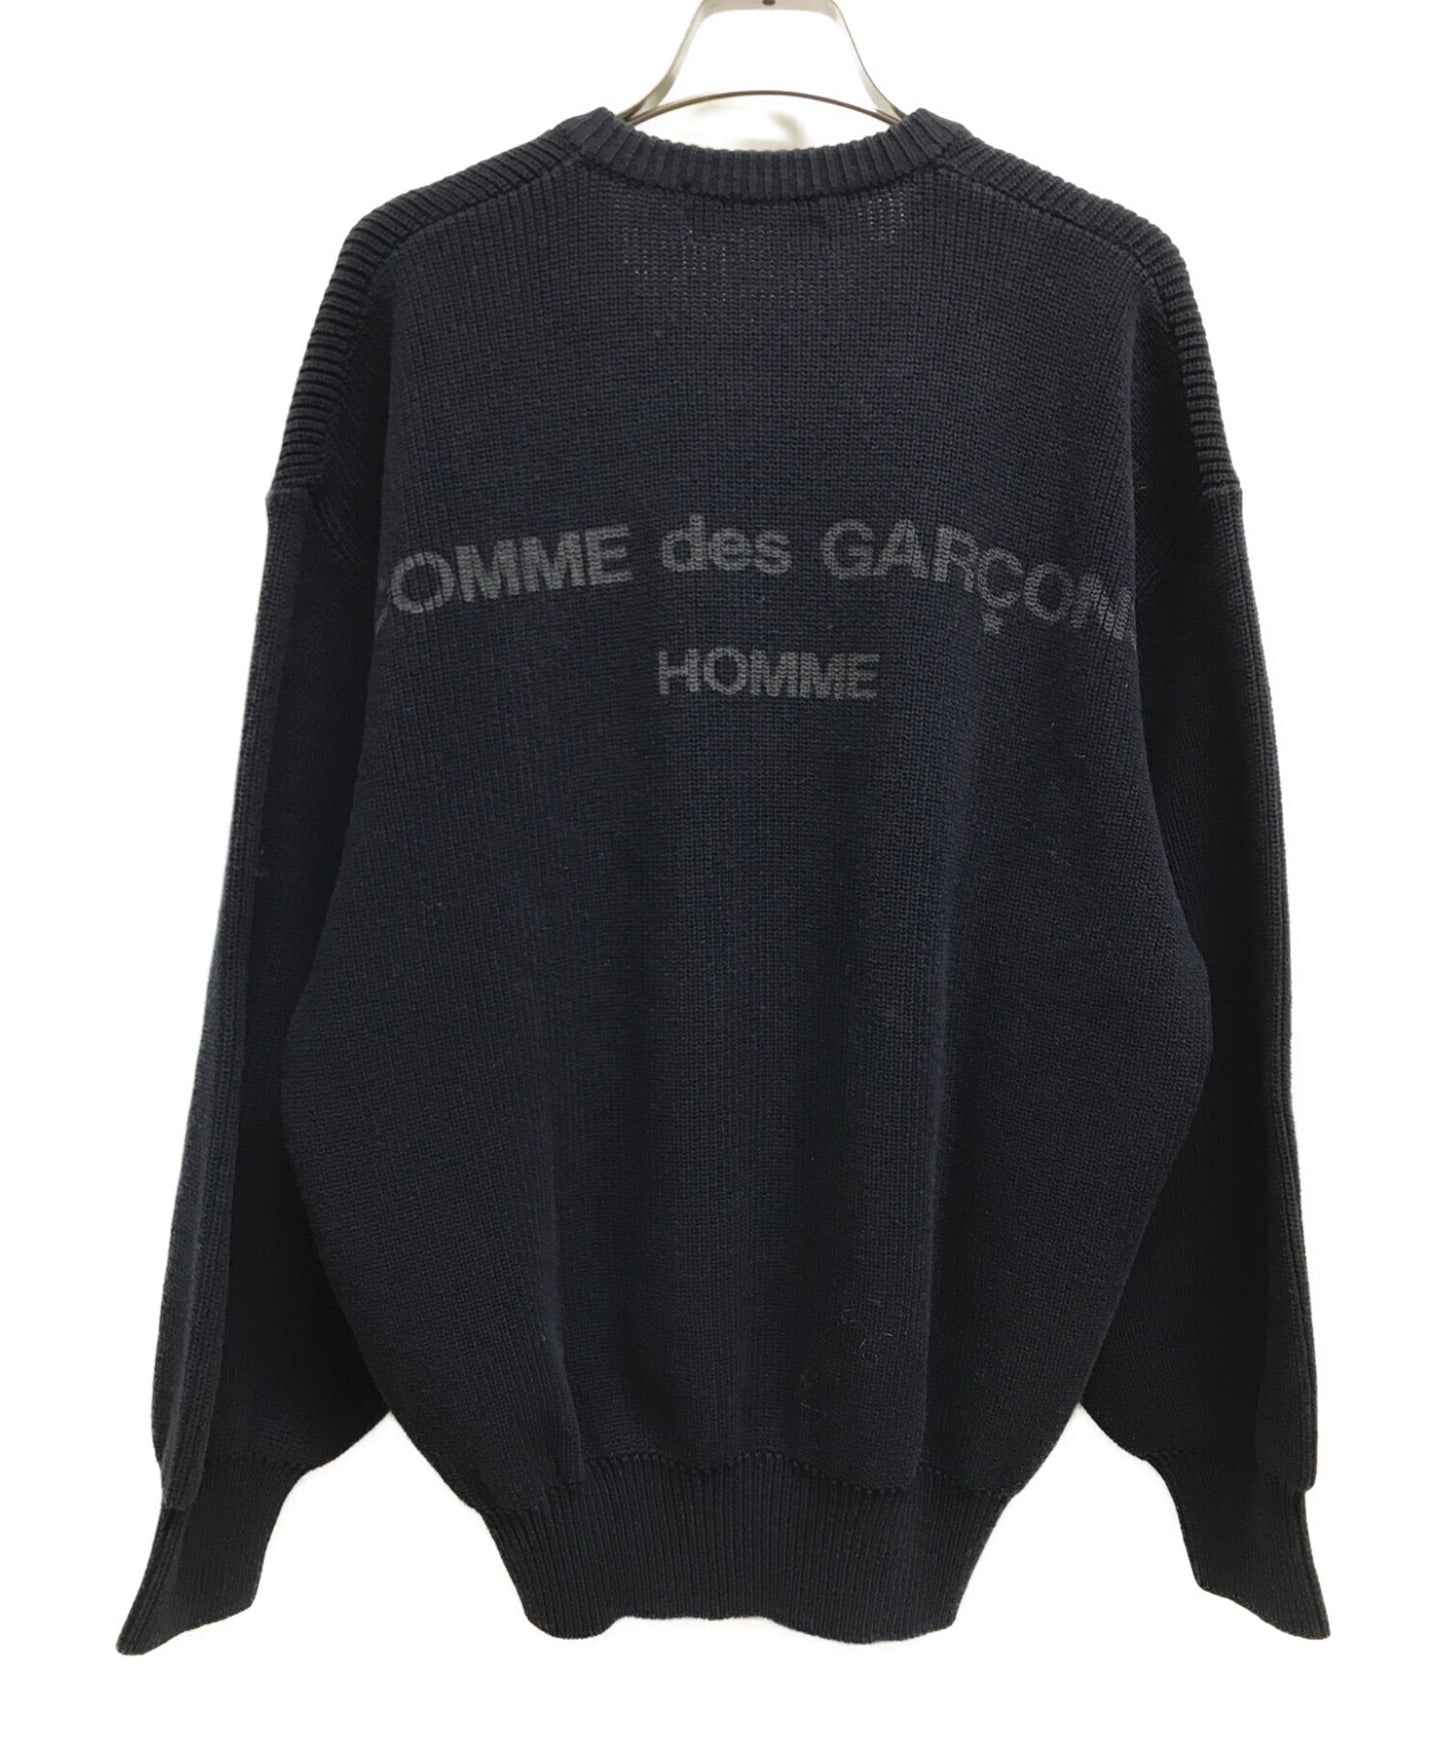 Comme des Garcons Homme Back 로고 프린트 V-Neck Knit 80의 오래된 아카이브 걸작 HN-110260